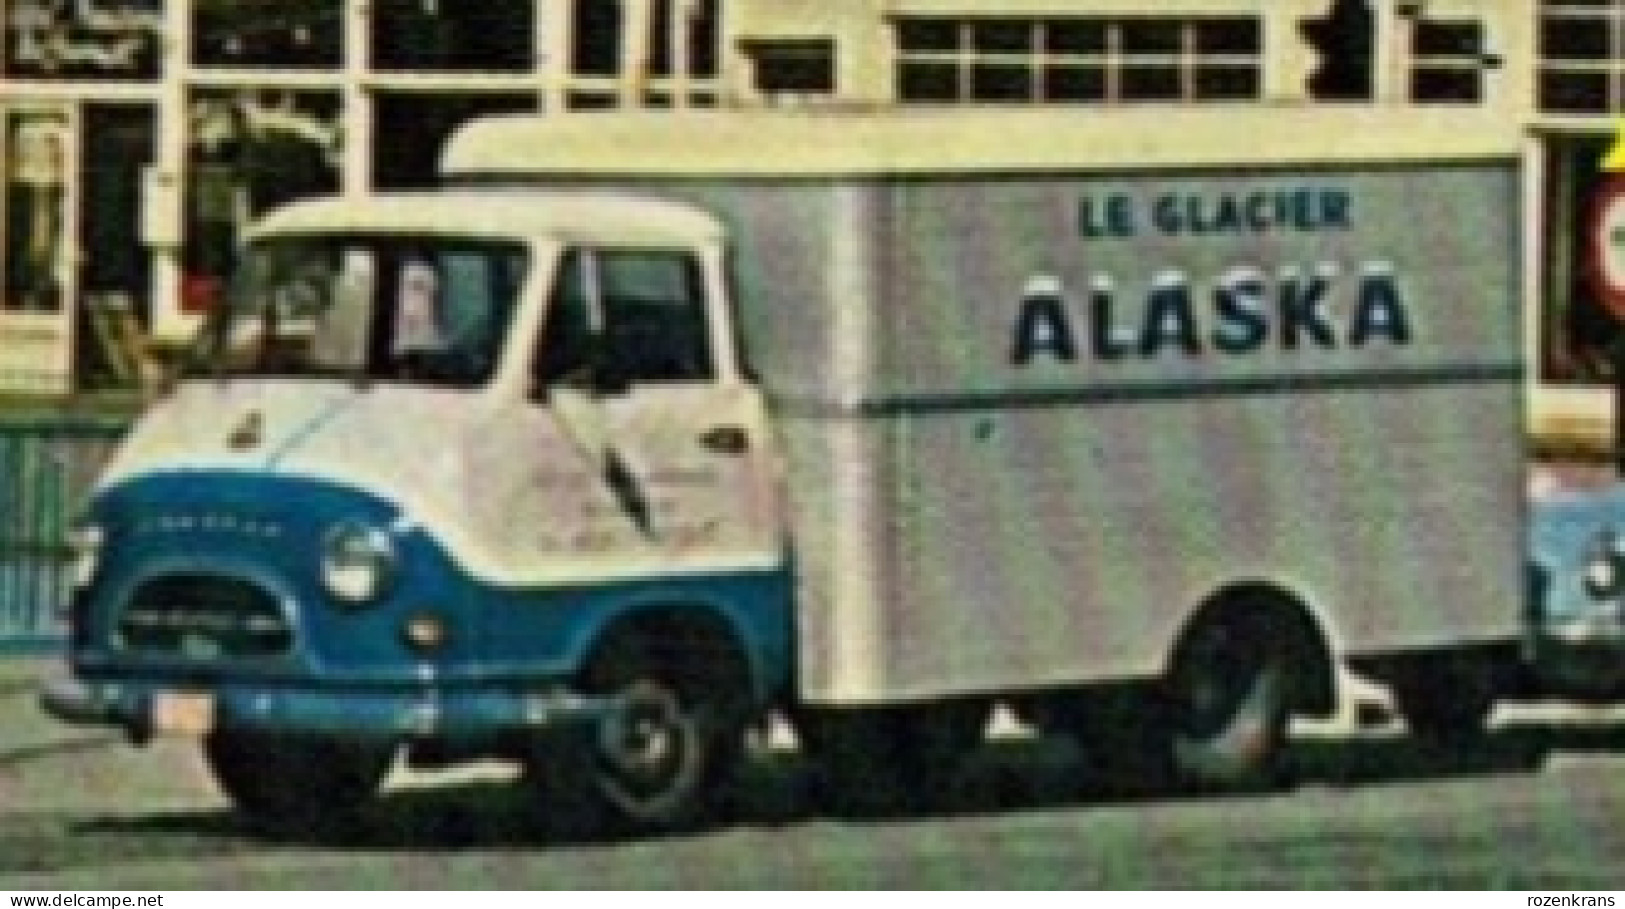 Koksijde Hotel Bristol Koninklijke Baan Citroen DS 19 Truck Reclame Le Glacier ALASKA Mon Bijou Volkswagen Kever Beetle - Koksijde